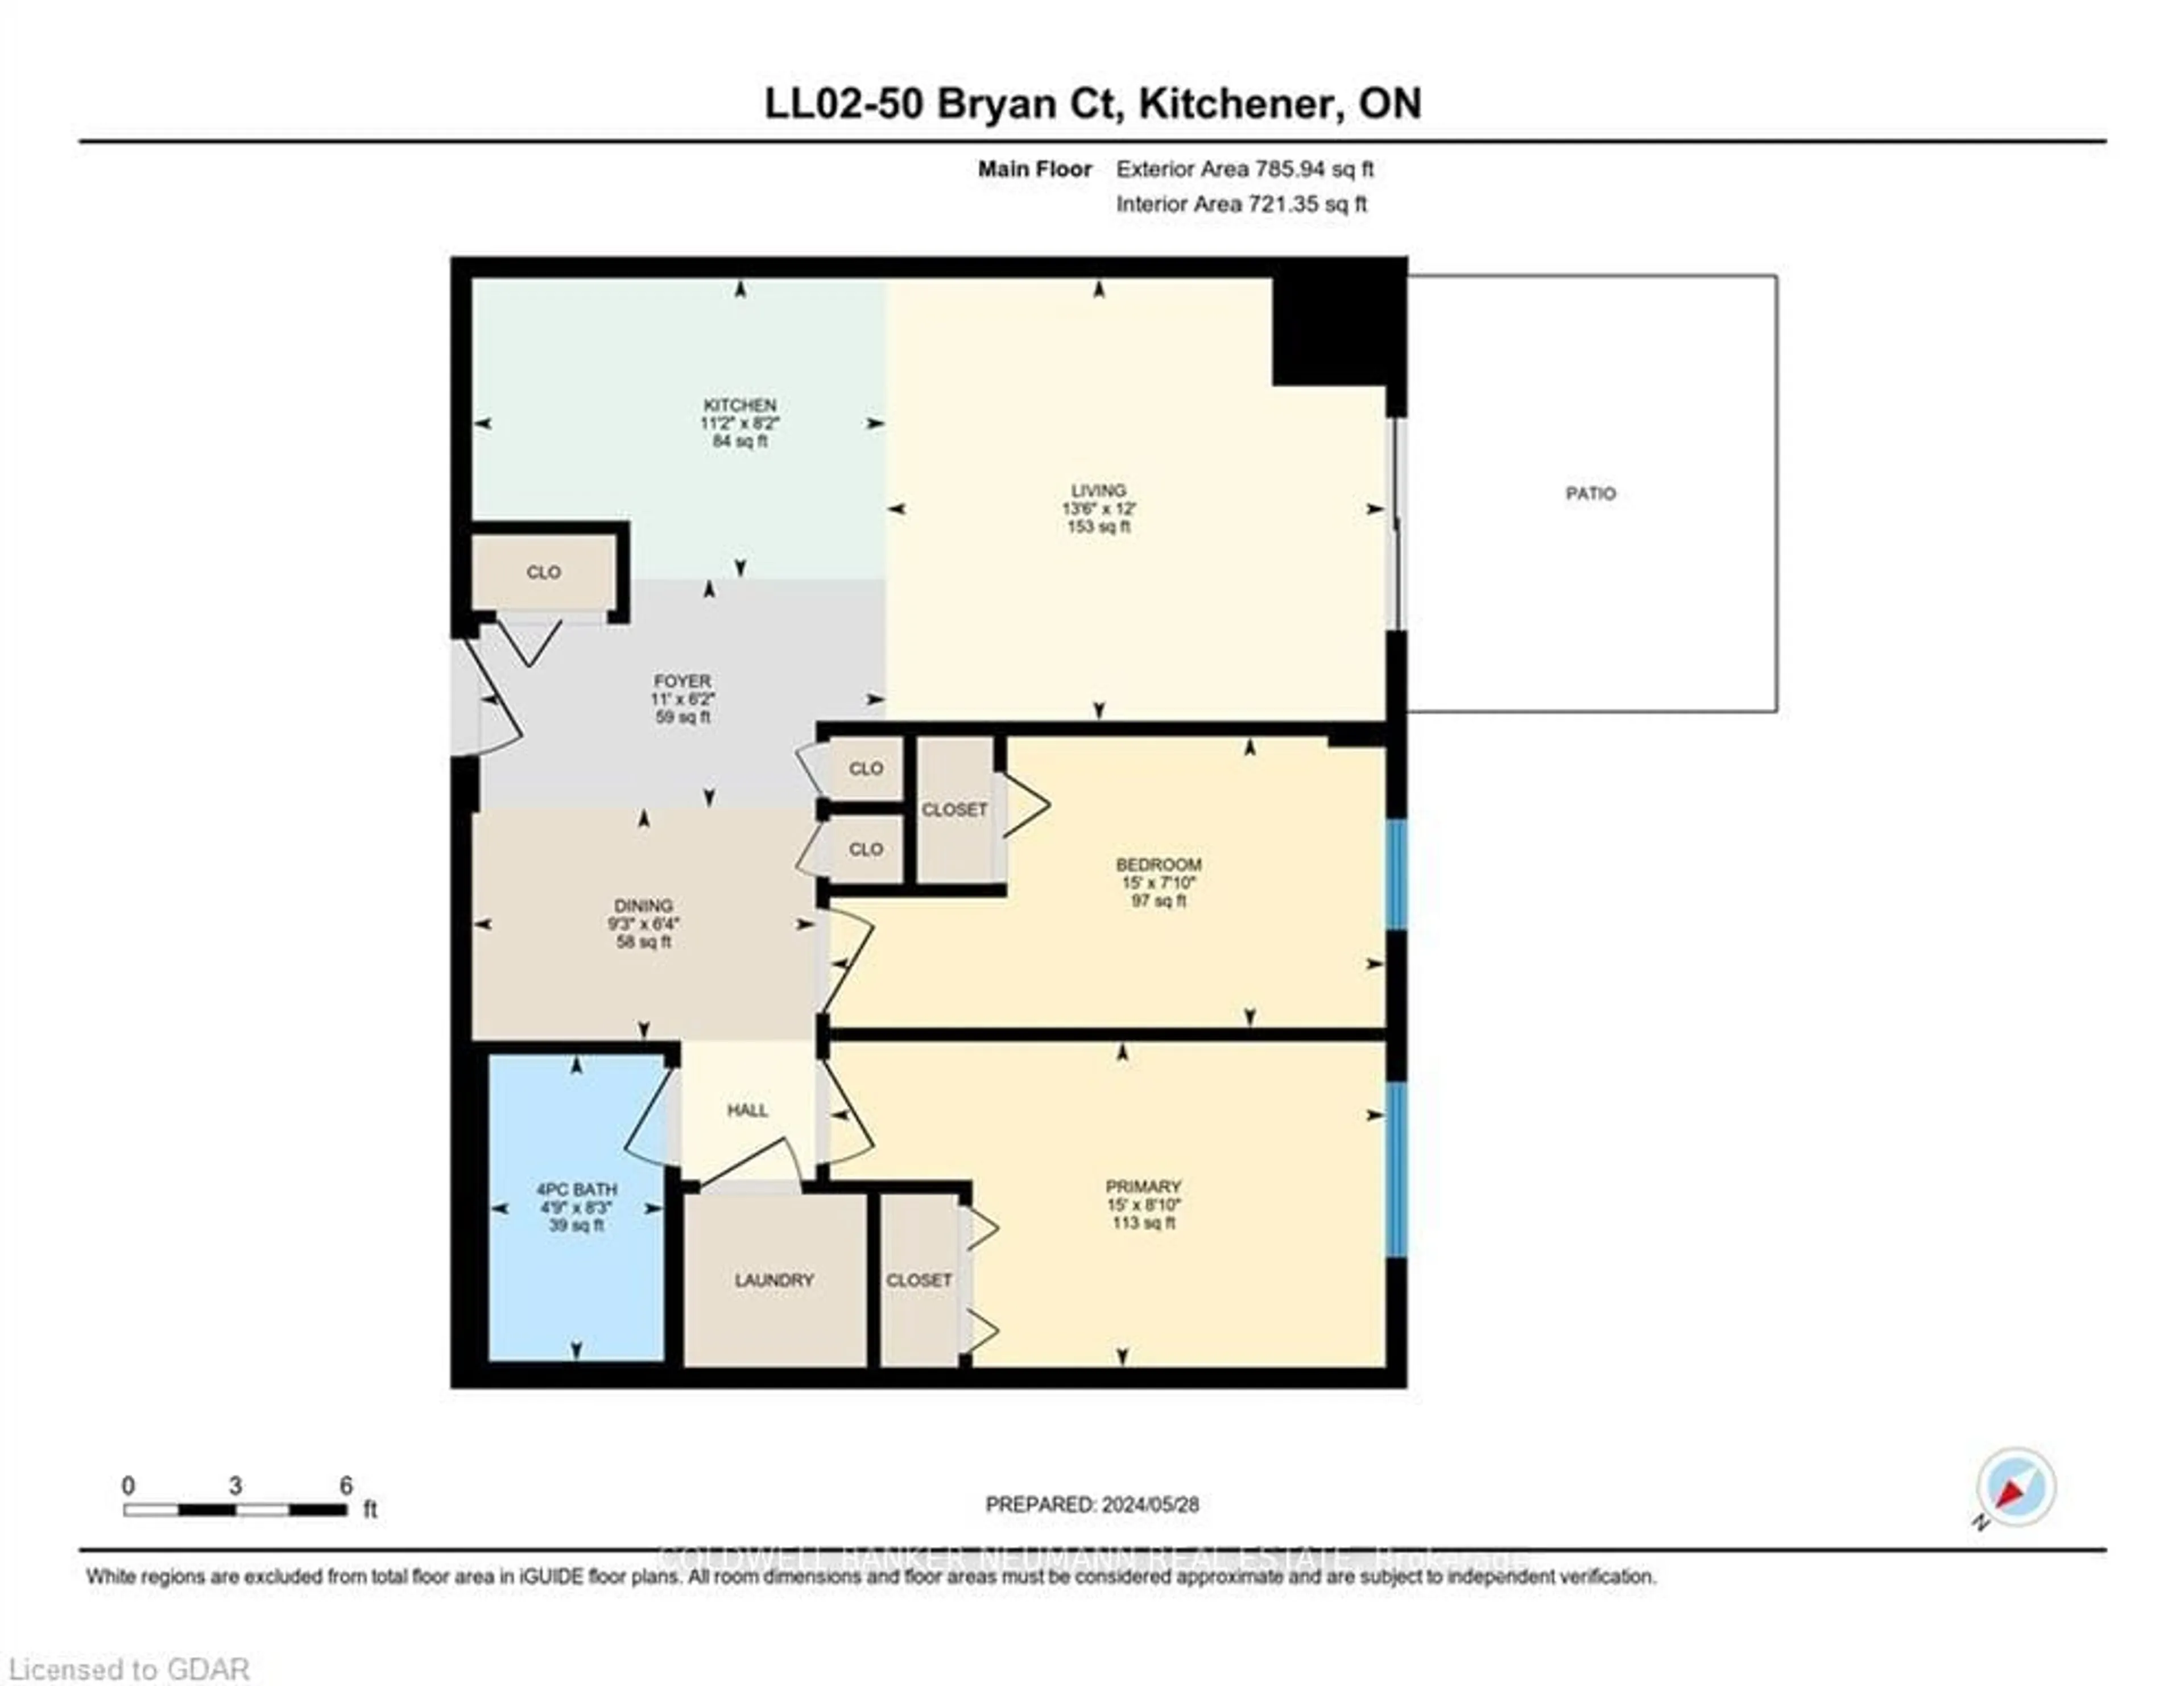 Floor plan for 50 Bryan Crt #LL02, Kitchener Ontario N2A 4N4